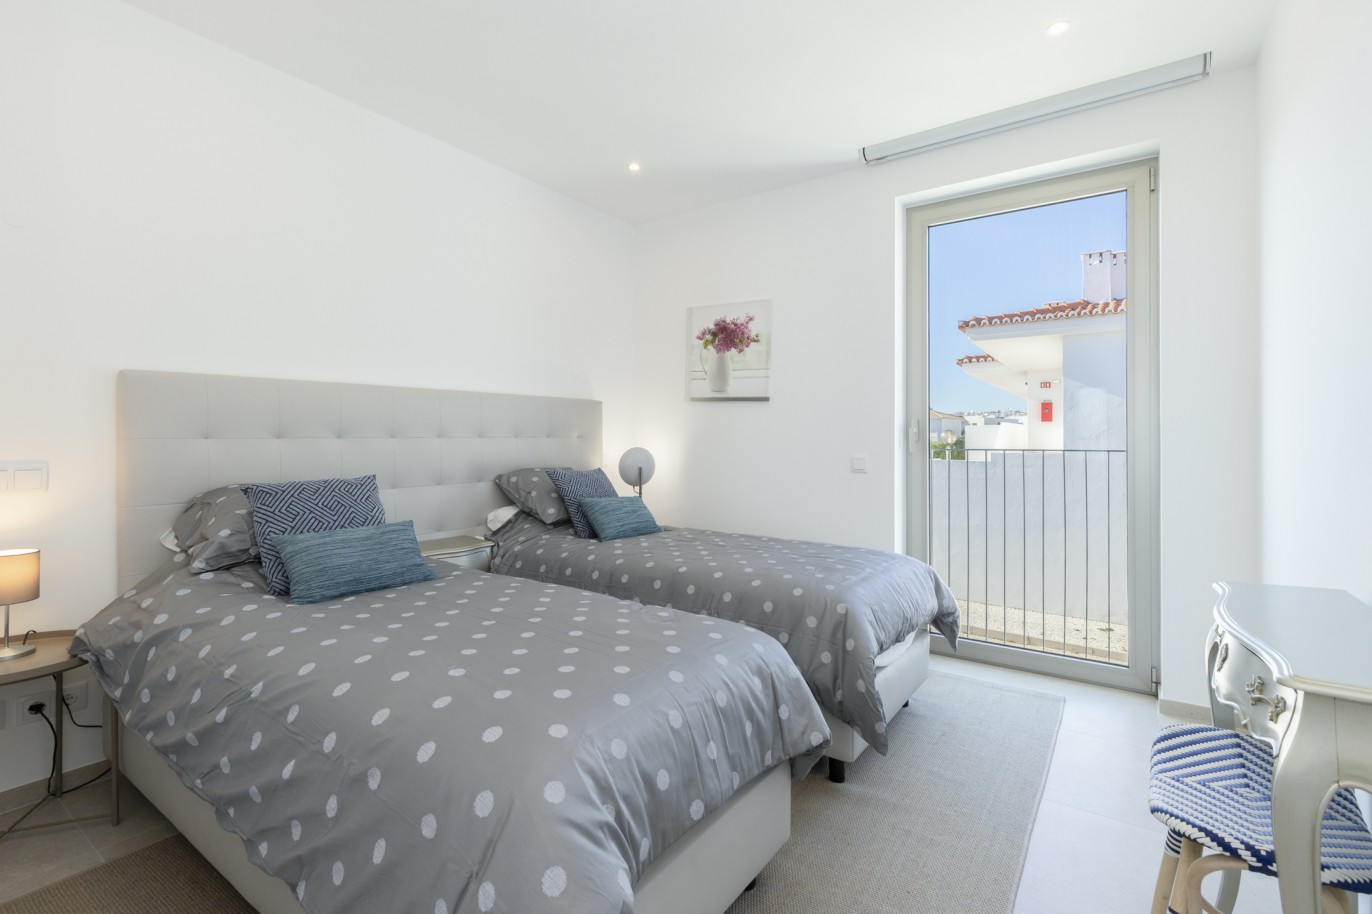 3 bedroom townhouse in private condominium, for sale, in Lagos, Algarve_217636